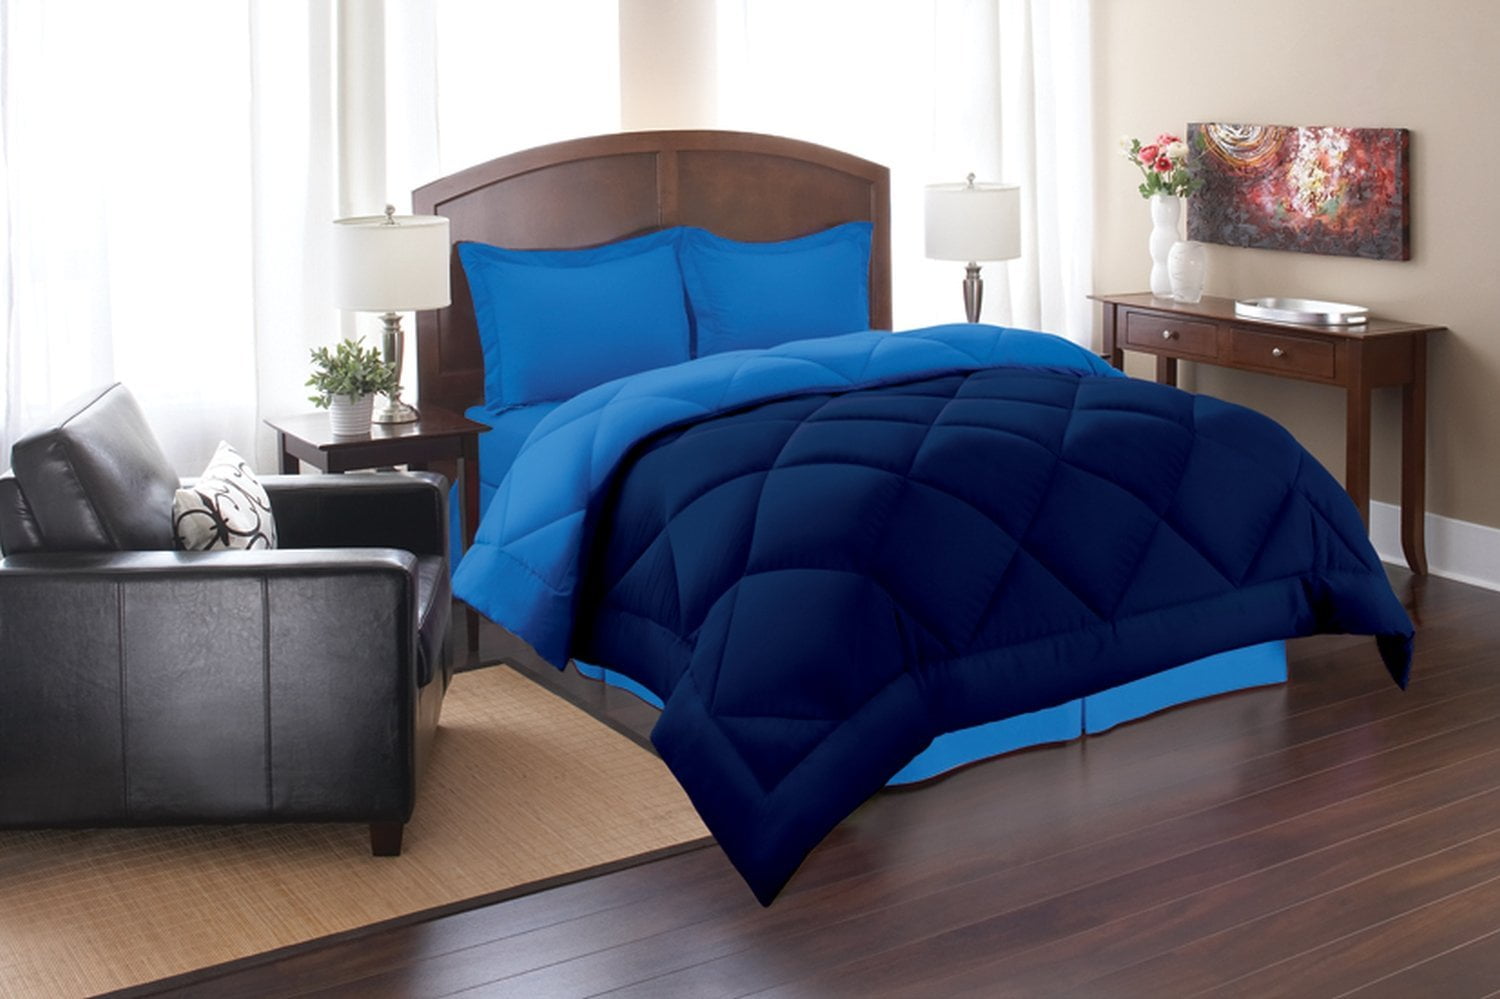 All Color Down Alternative Reversible Comforter King Queen Comforter Set 